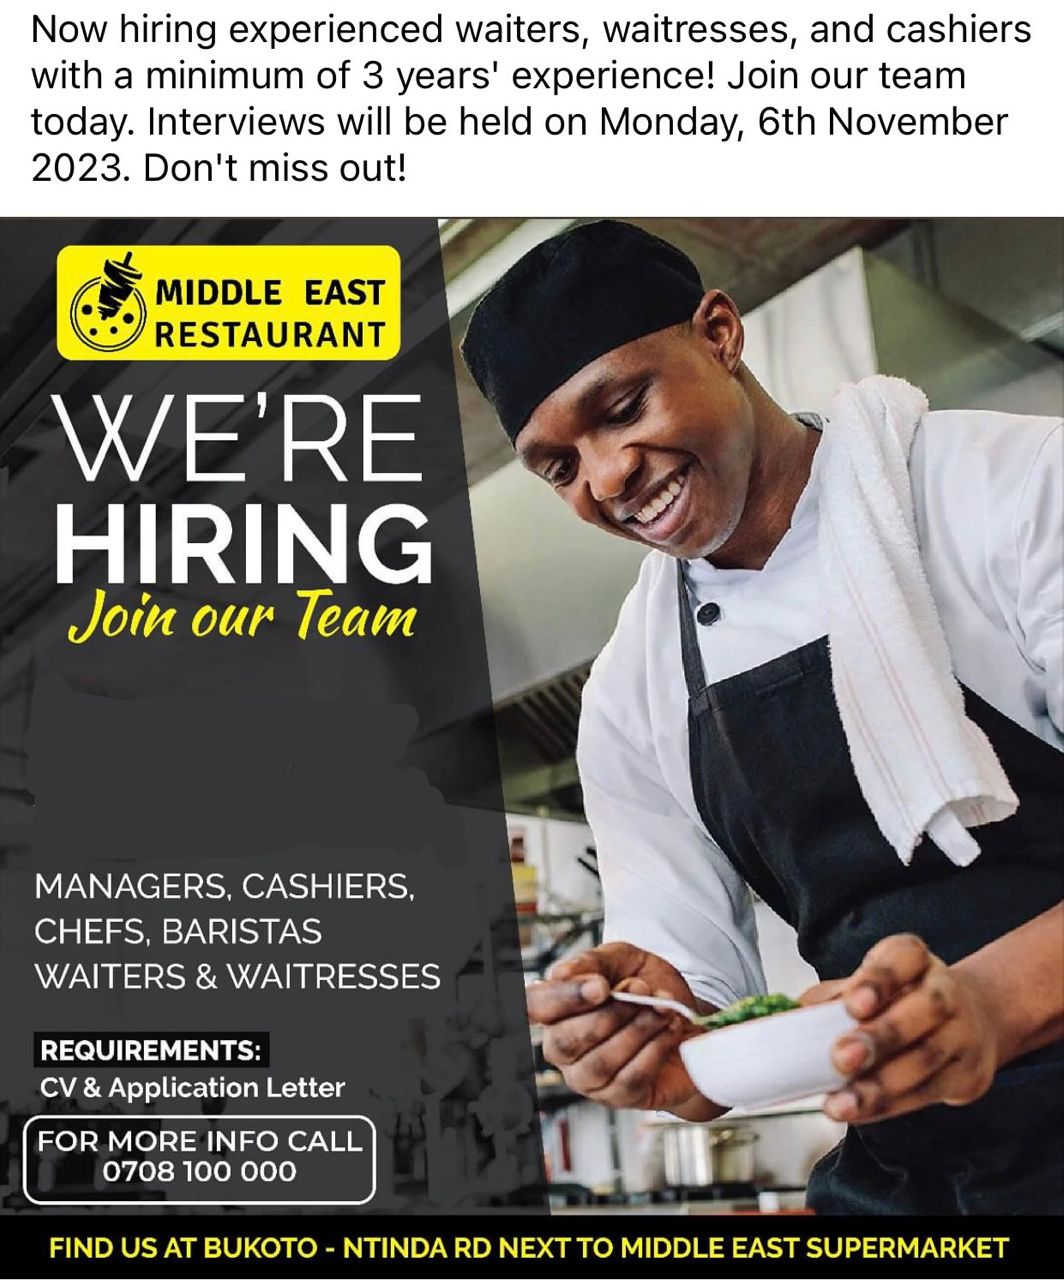 Several Job Vacancies at Middle East Restaurant